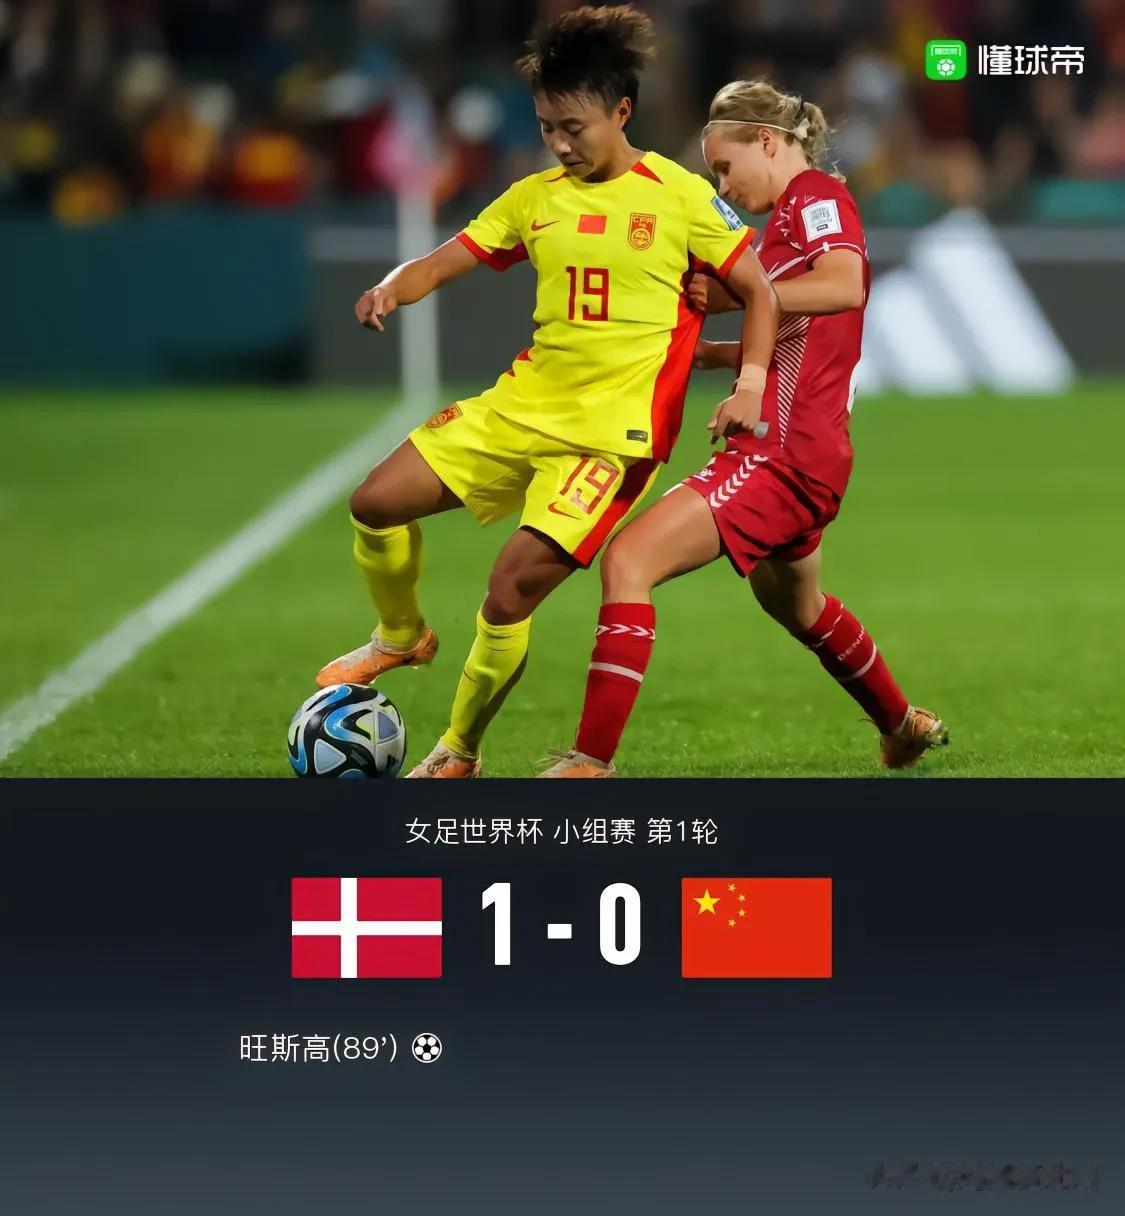 女足大概率小组出线不了

输给了直接竞争对手丹麦，而且女足几乎不可能拿下英格兰，(1)